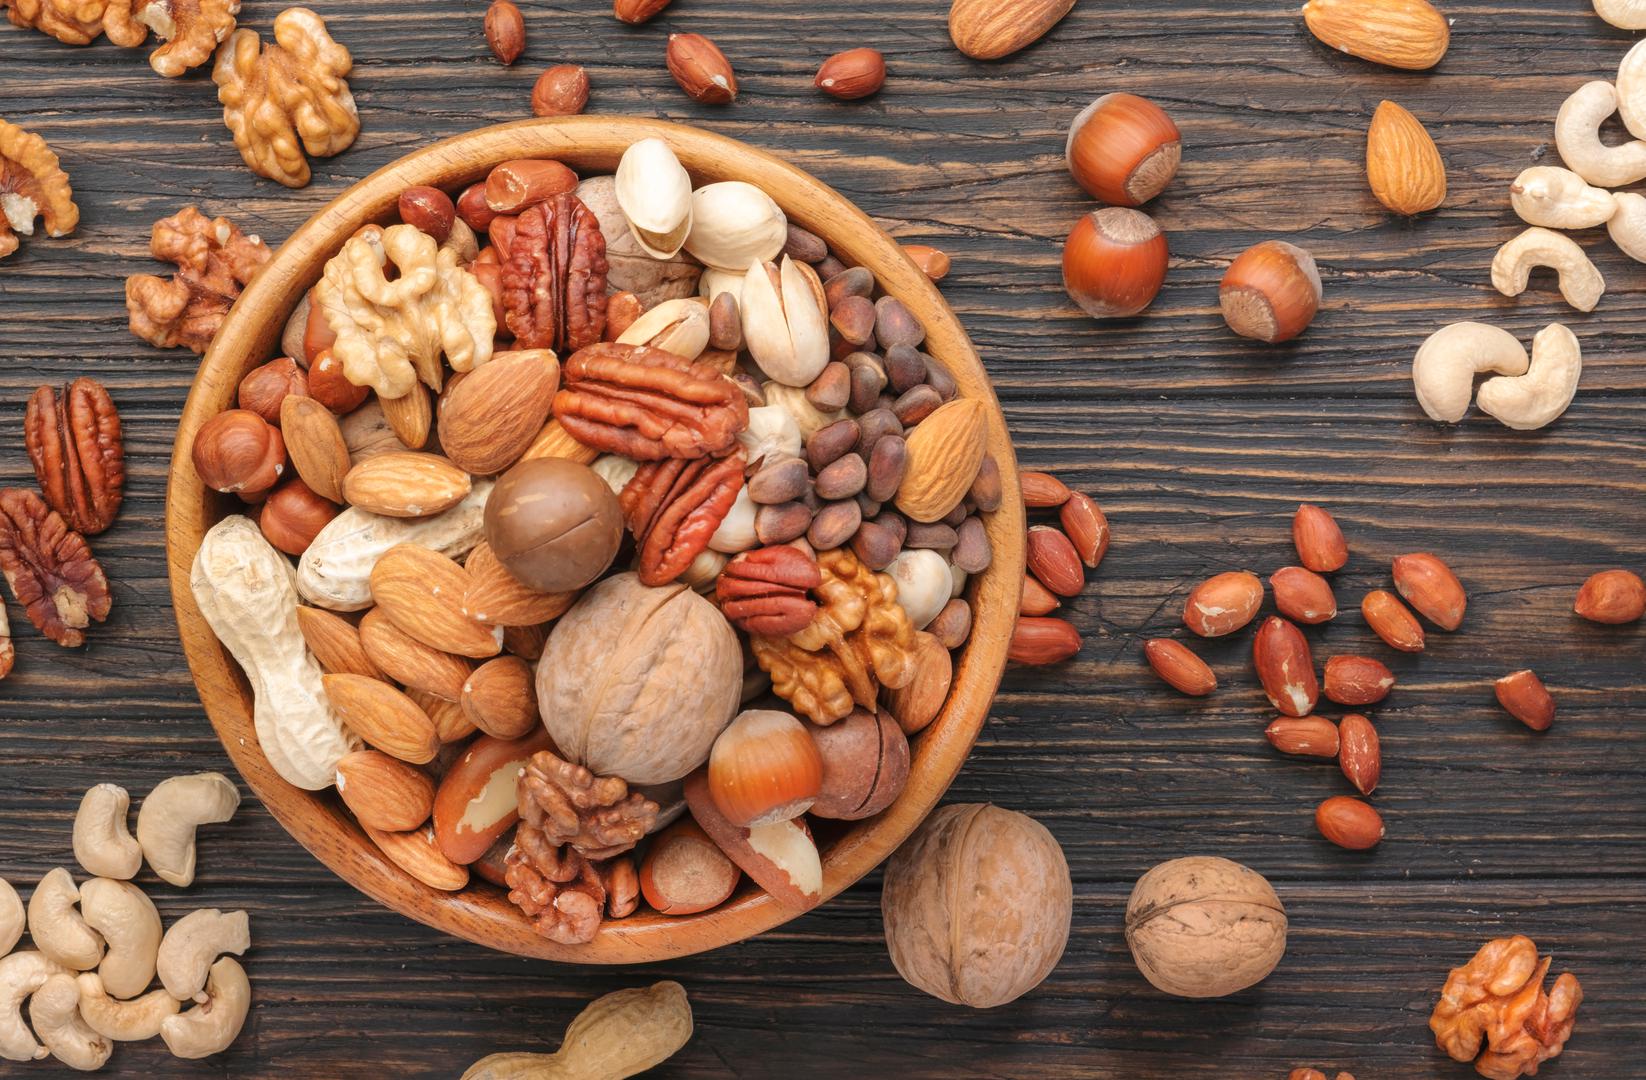 7. Orašasti plodovi: Cink je neophodan za zdrav imunološki sustav, budući da igra ulogu u regulaciji unutarstaničnih signalnih putova sustava. Mnoge su namirnice bogate cinkom, ali malo ih je tako pristupačnih kao orašasti plodovi. Orašasti plodovi, poput indijskih oraščića, badema i pinjola, izvrsni su izvori cinka. Na primjer, 30 grama indijskih oraščića sadrži 1,64 mg cinka, 15% najviše preporučene dnevne doze. Slično tome, 30 grama badema osigurava 0,885 mg cinka ili 8% gornje granice preporučenog raspona.